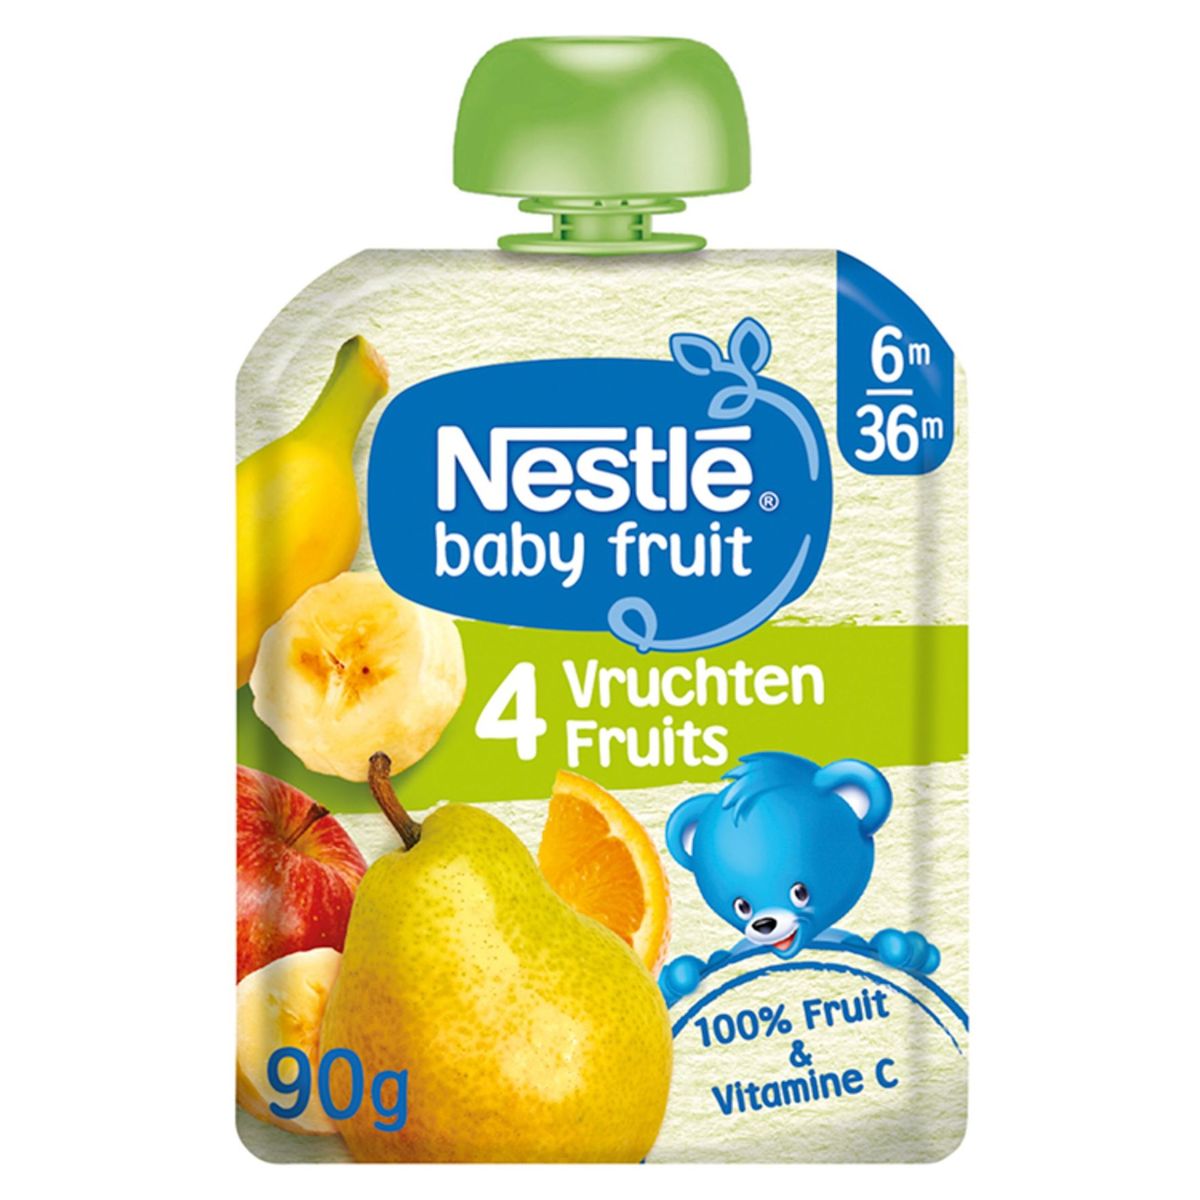 Nestlé Baby Fruit 4 Vruchten 6M-36M 90 g